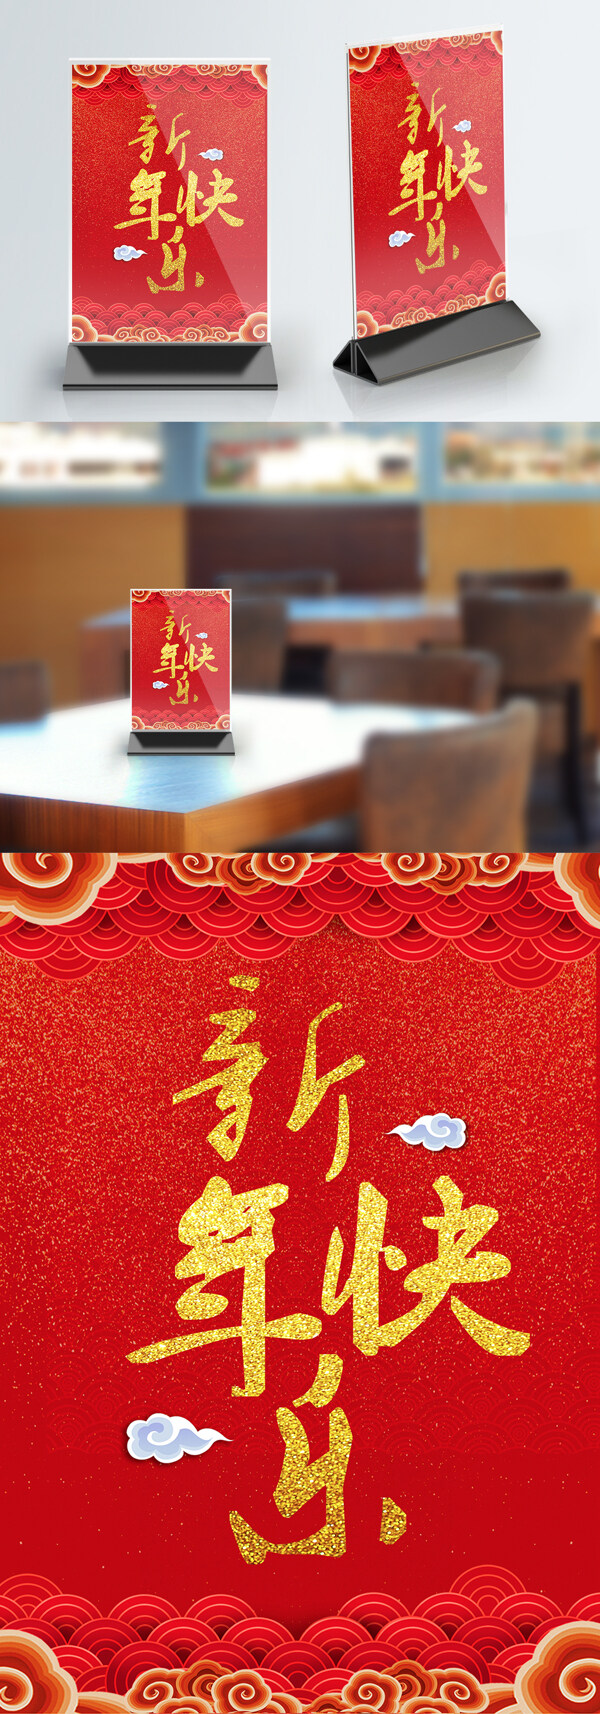 红色喜庆大气新年快乐桌卡设计